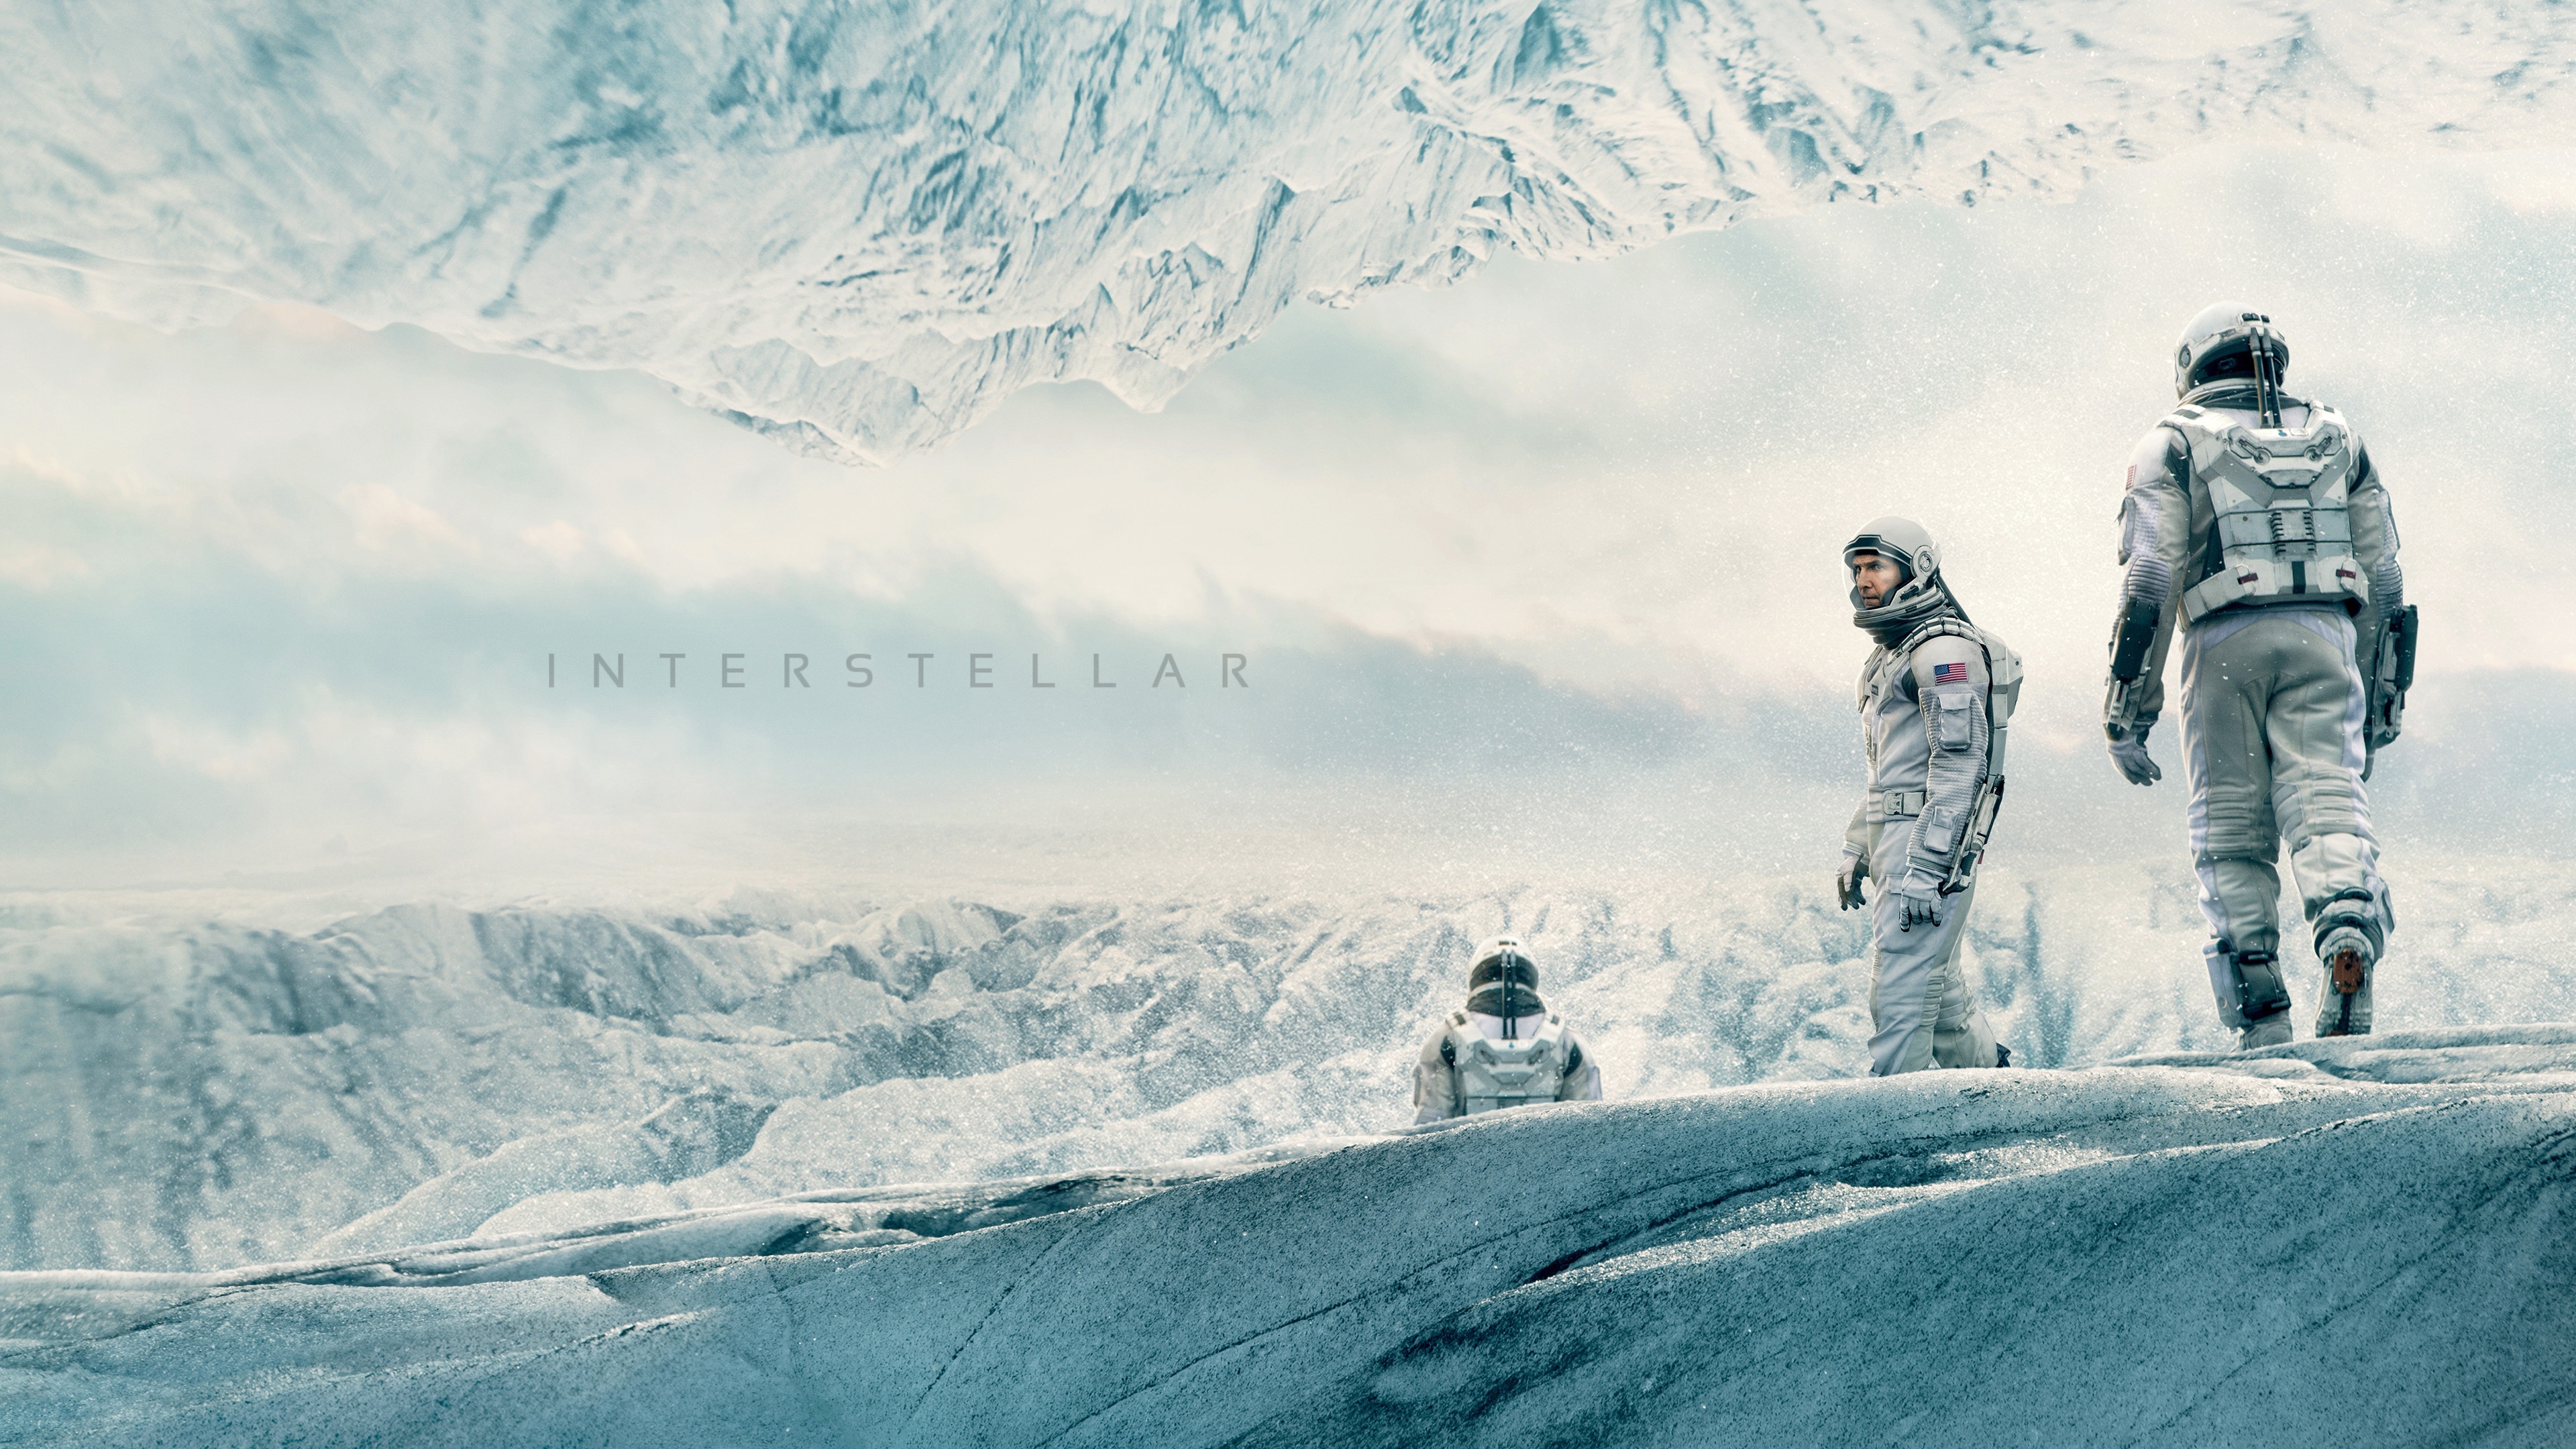 壁紙 3840x2160 男性 宇宙飛行士 インターステラー 2014 映画 ダウンロード 写真